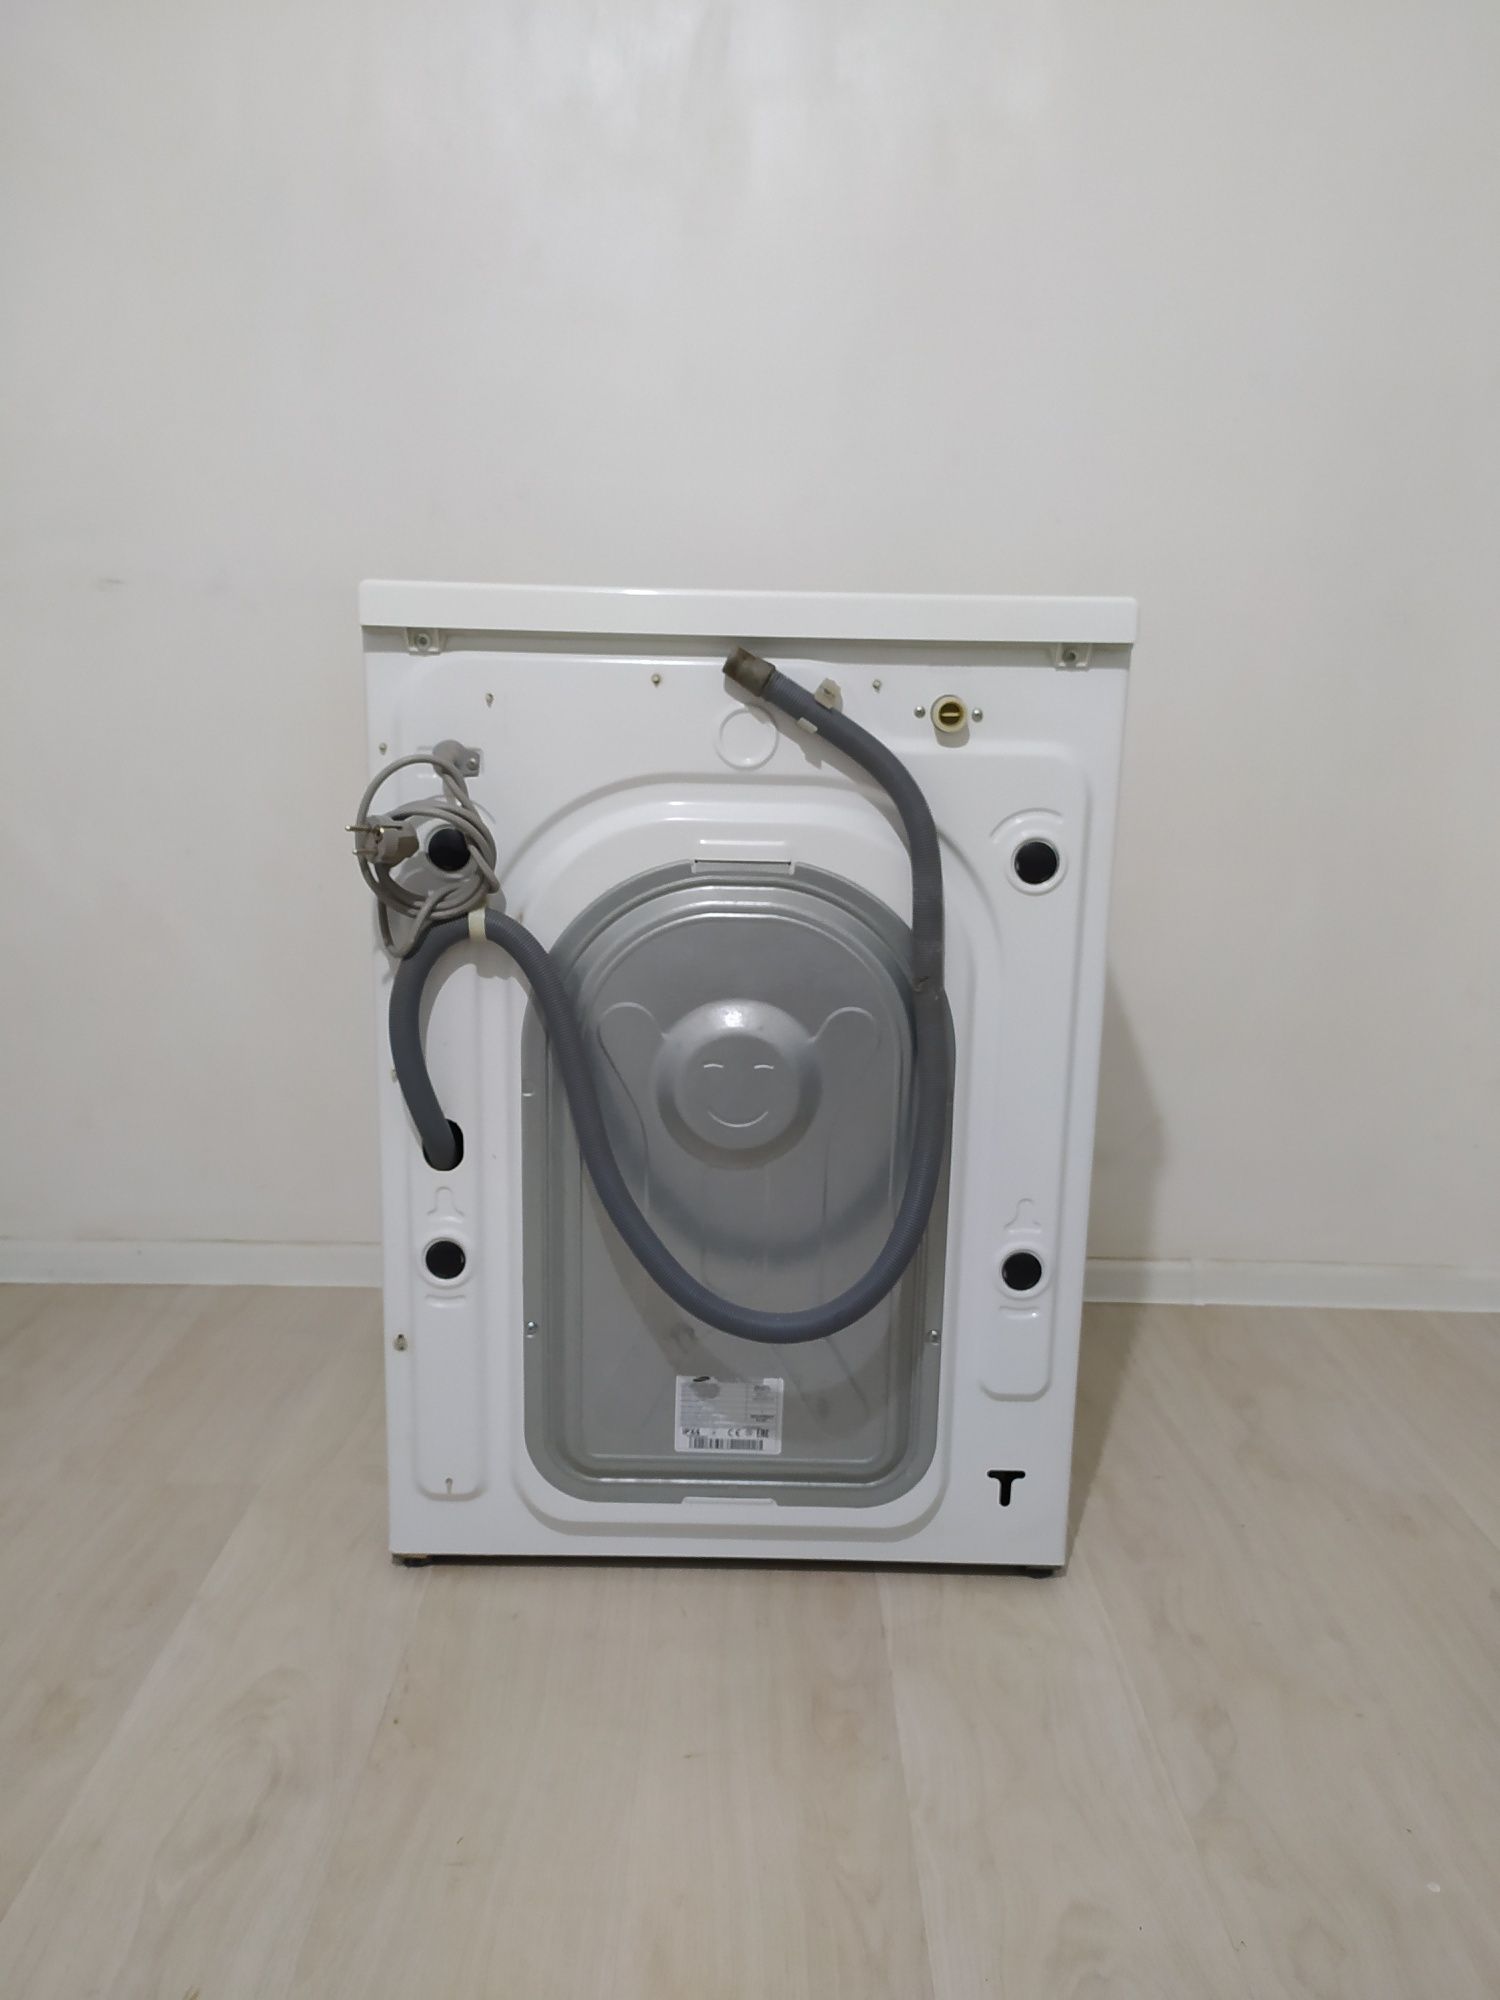 Продам стиральную машину Samsung на 6кг Купить Самсунг в Алматы